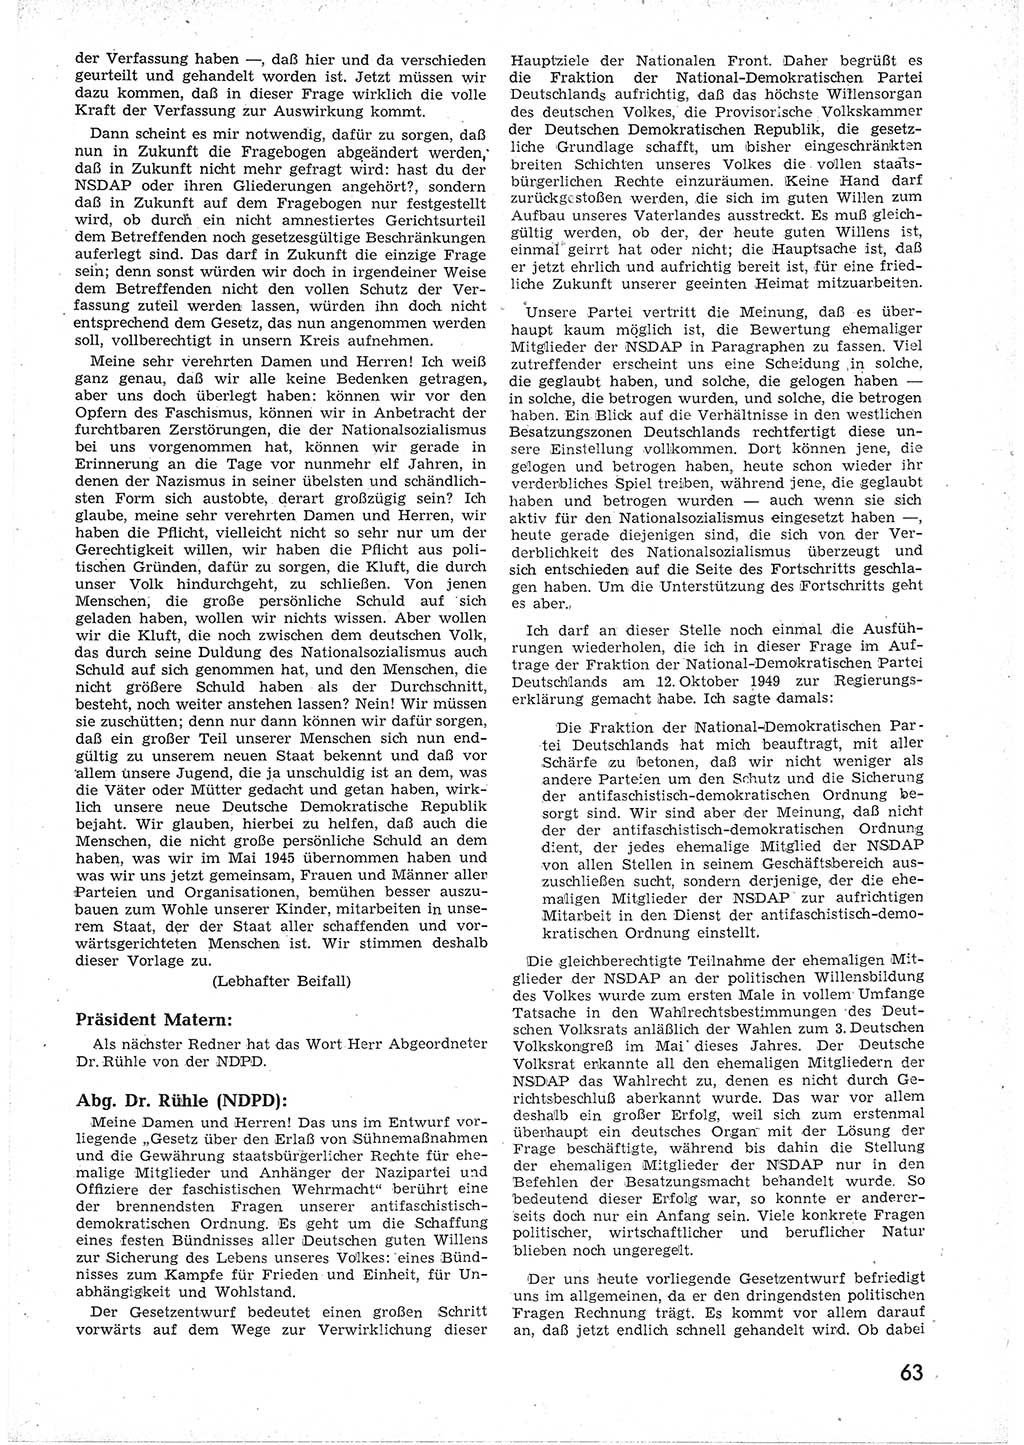 Provisorische Volkskammer (VK) der Deutschen Demokratischen Republik (DDR) 1949-1950, Dokument 75 (Prov. VK DDR 1949-1950, Dok. 75)